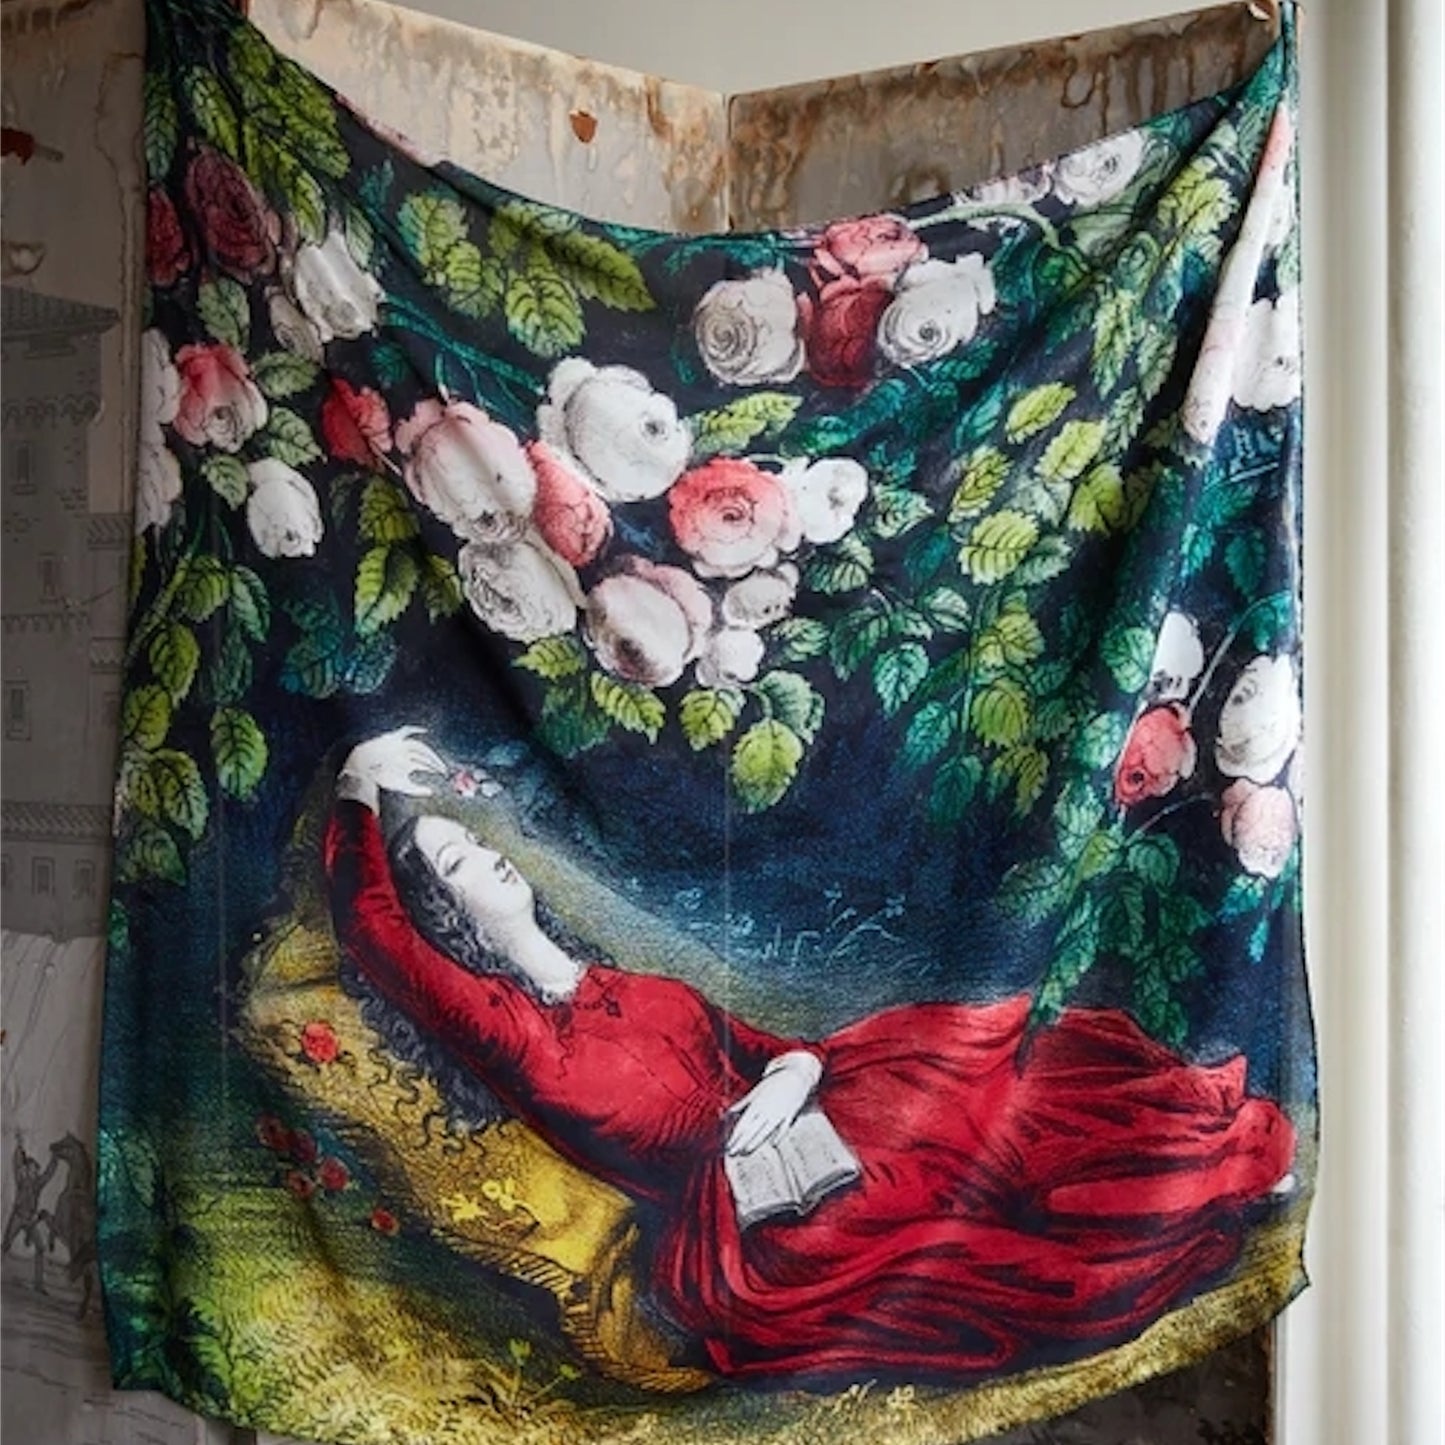 【JOHN DERIAN】シルクスカーフ Sleeping Beauty Silk Scarf